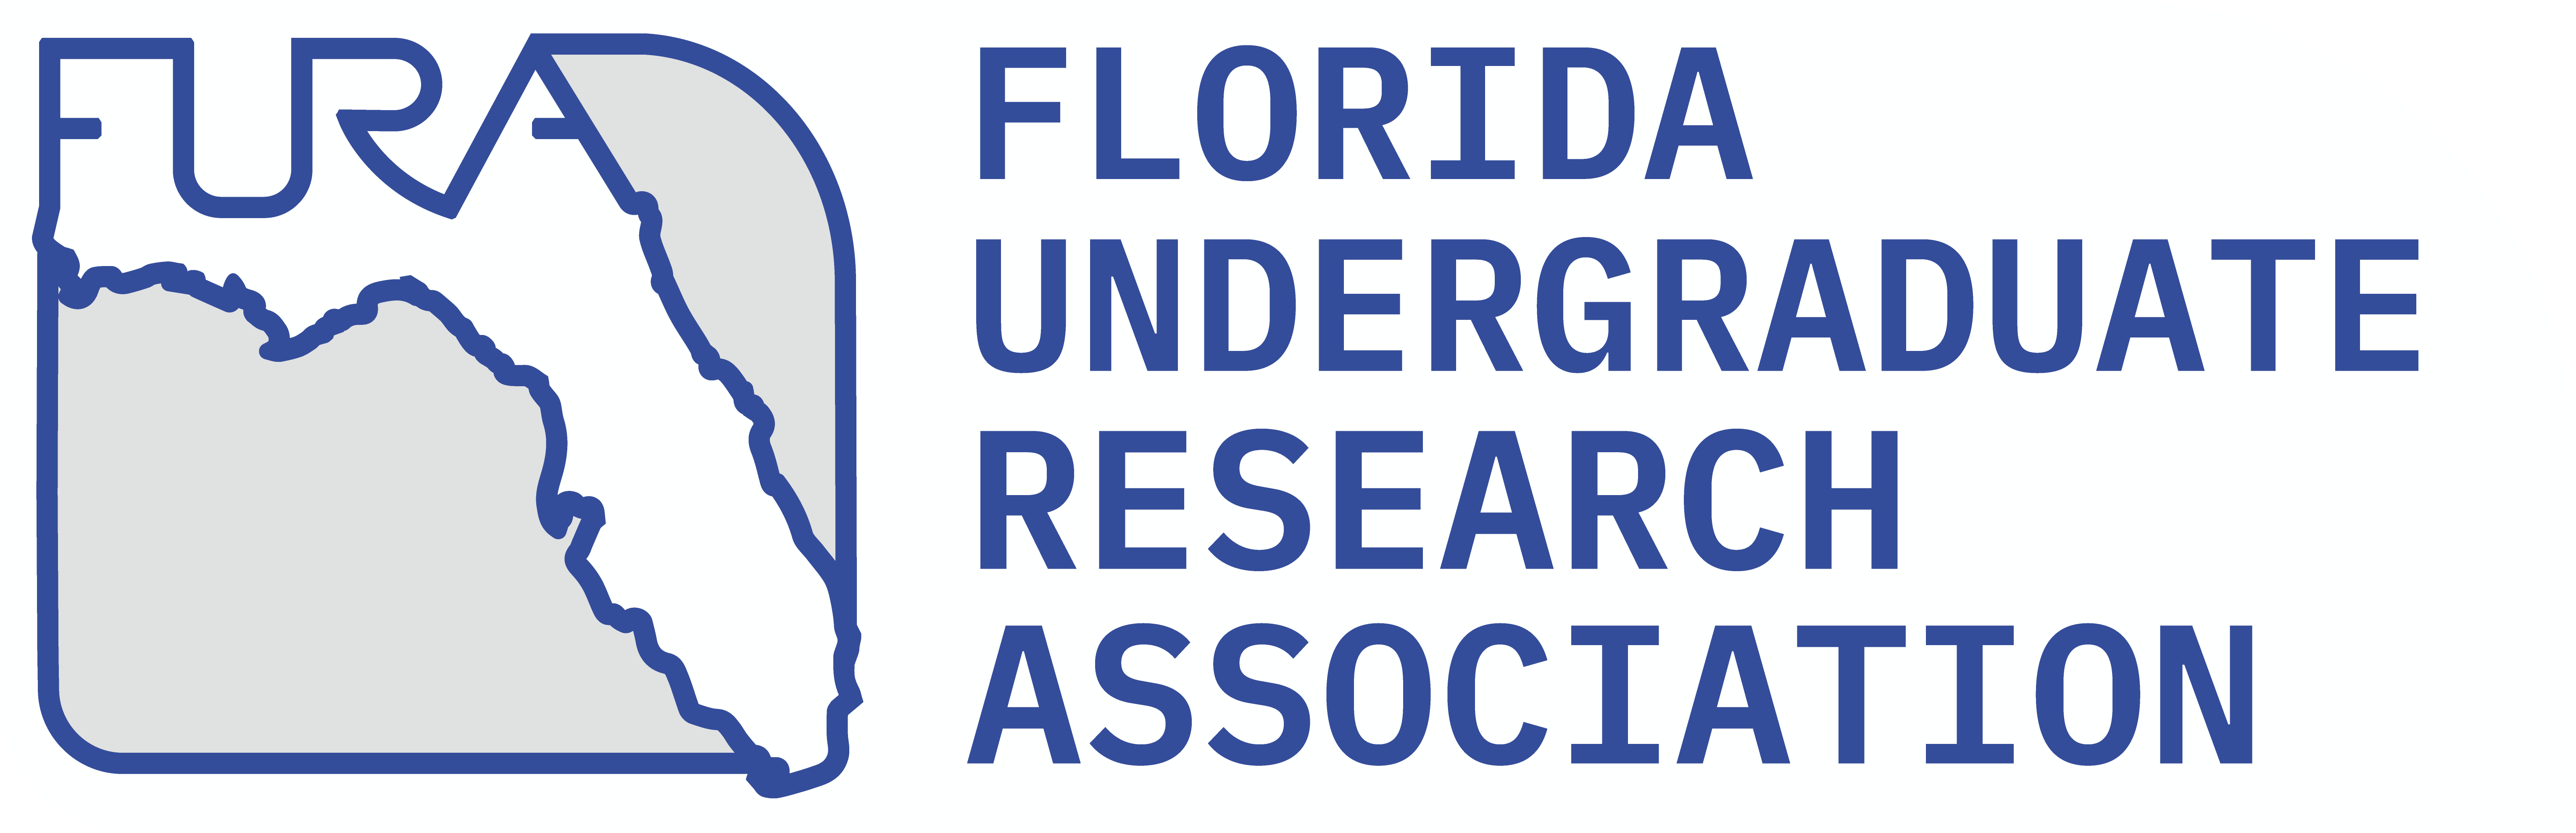 Florida Undergraduate Research Association Logo